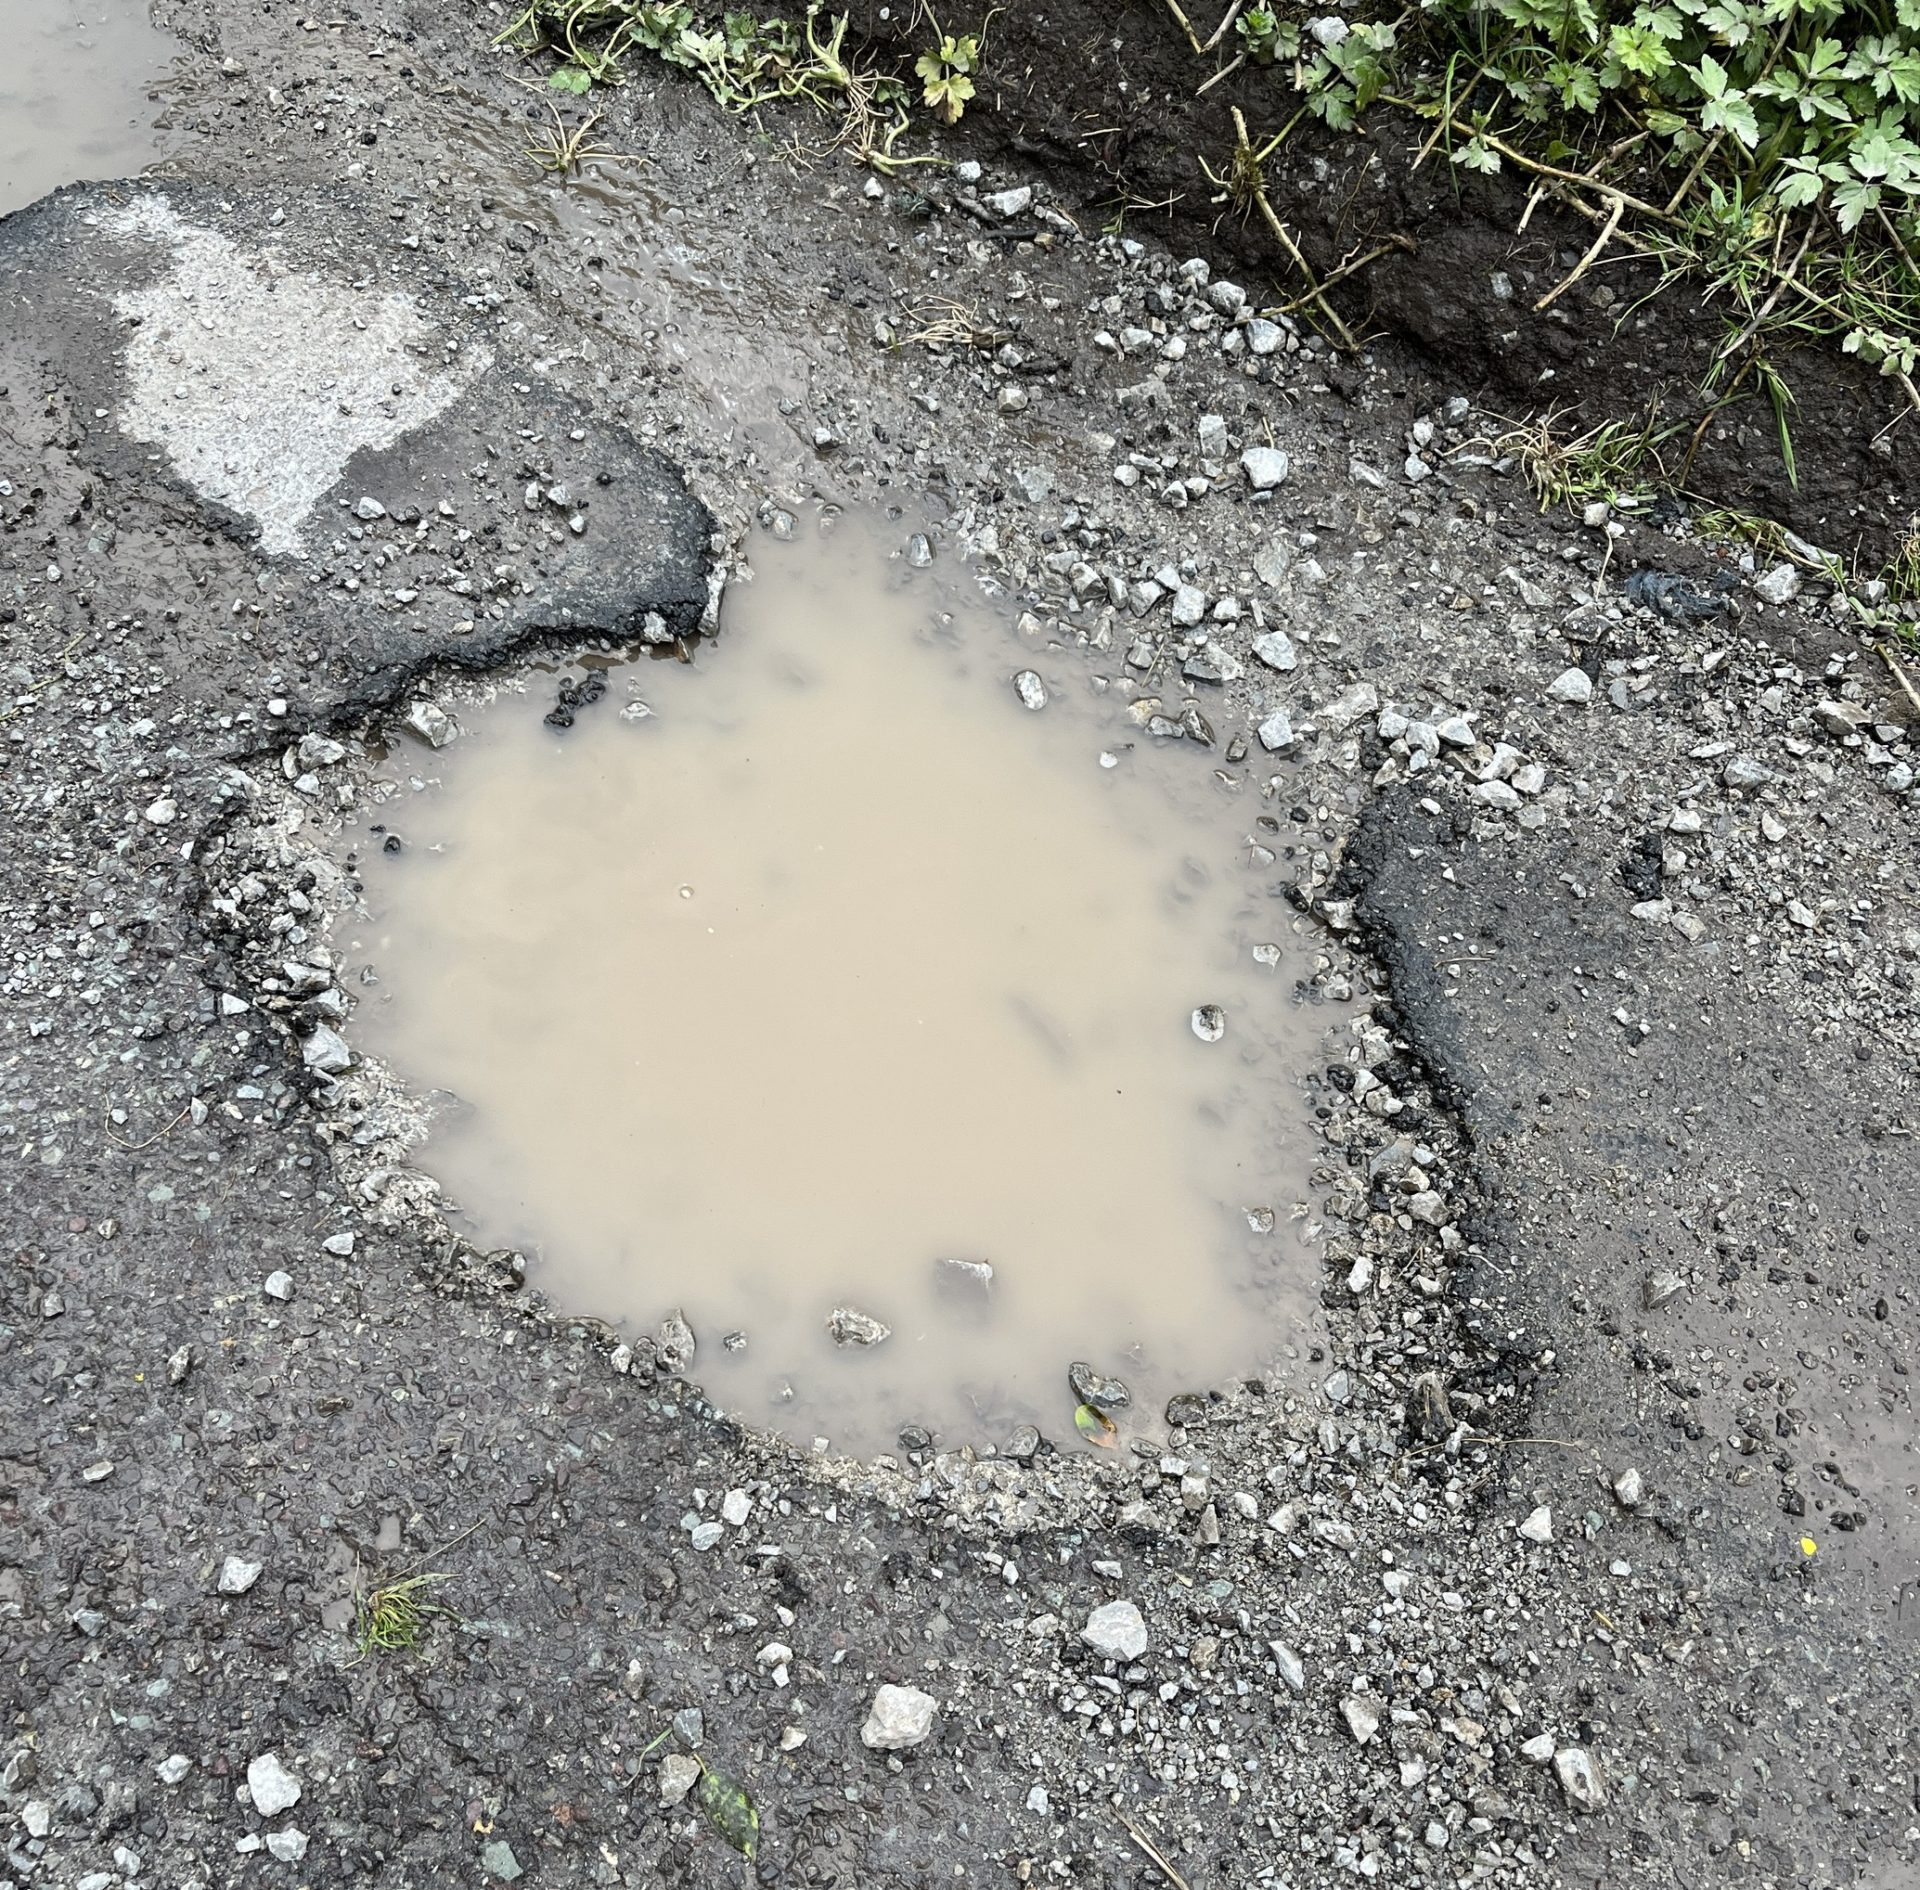 A pothole on a cul-de-sac in Co Meath